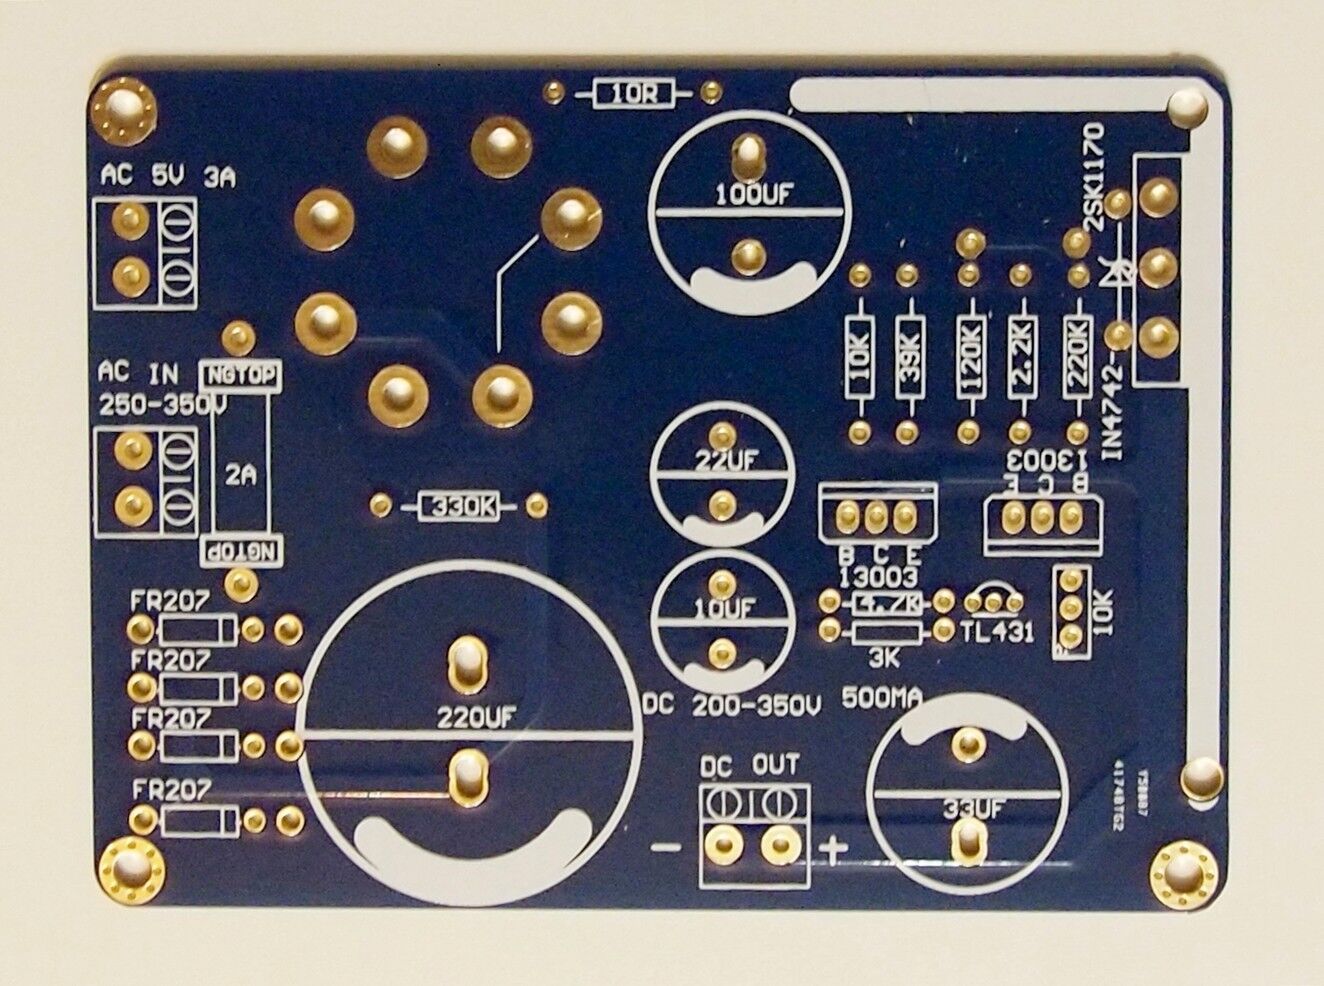 Kubota low noise HV regulator w/soft-starting for tube amplifiers PCB 